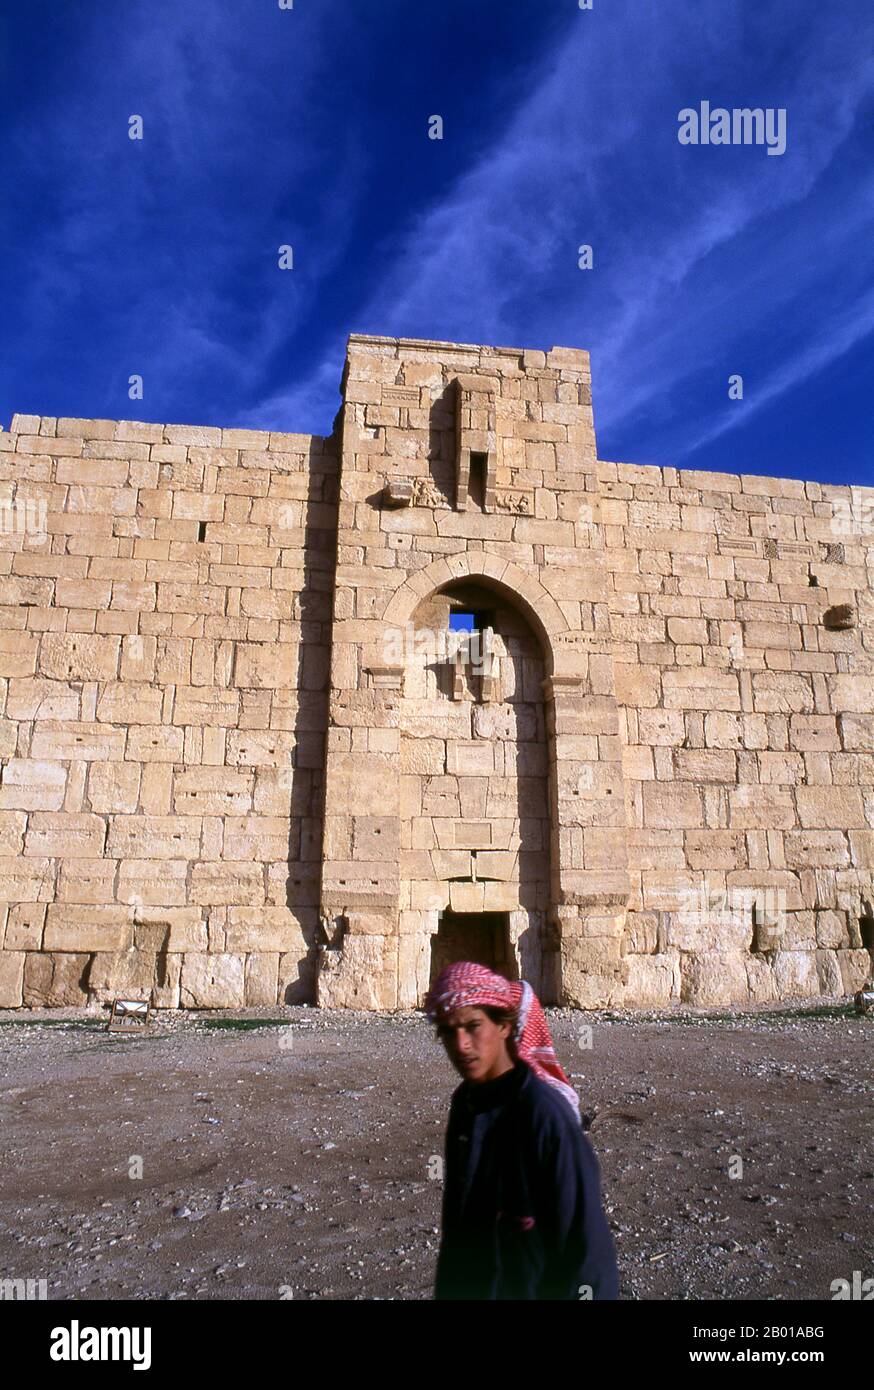 Siria: Il Tempio di Bel, Palmyra. Il Tempio di Bel, consacrato al dio Semitico Bel, adorò a Palmyra come Malakbel, costituì il centro della vita religiosa a Palmyra e fu dedicato nel 32 d.C. Palmyra era un'antica città in Siria. Era una città importante nella Siria centrale, situata in un'oasi 215 km a nord-est di Damasco e 180 km a sud-ovest dell'Eufrate a Deir ez-Zor. Era stata a lungo una città carovana vitale per i viaggiatori che attraversavano il deserto siriano ed era conosciuta come la sposa del deserto. È anche noto con il suo nome semitico Tadmor, Tadmur o Tudmur. Foto Stock